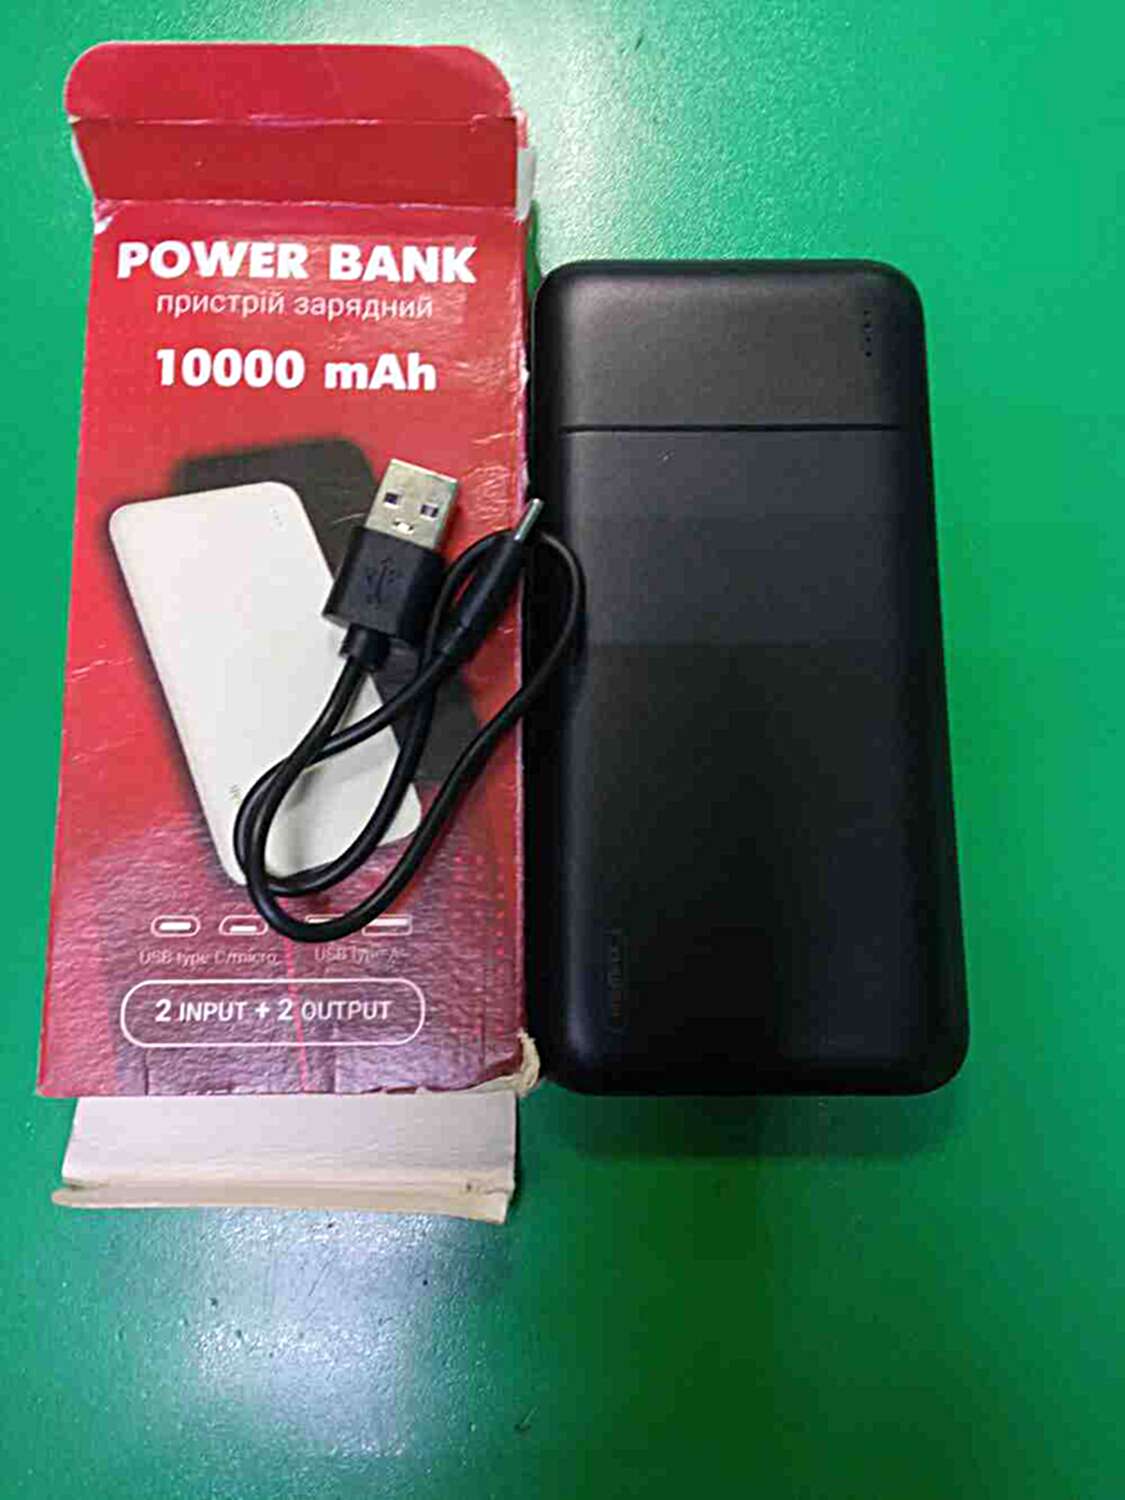 PowerBank 10000 mAh  0